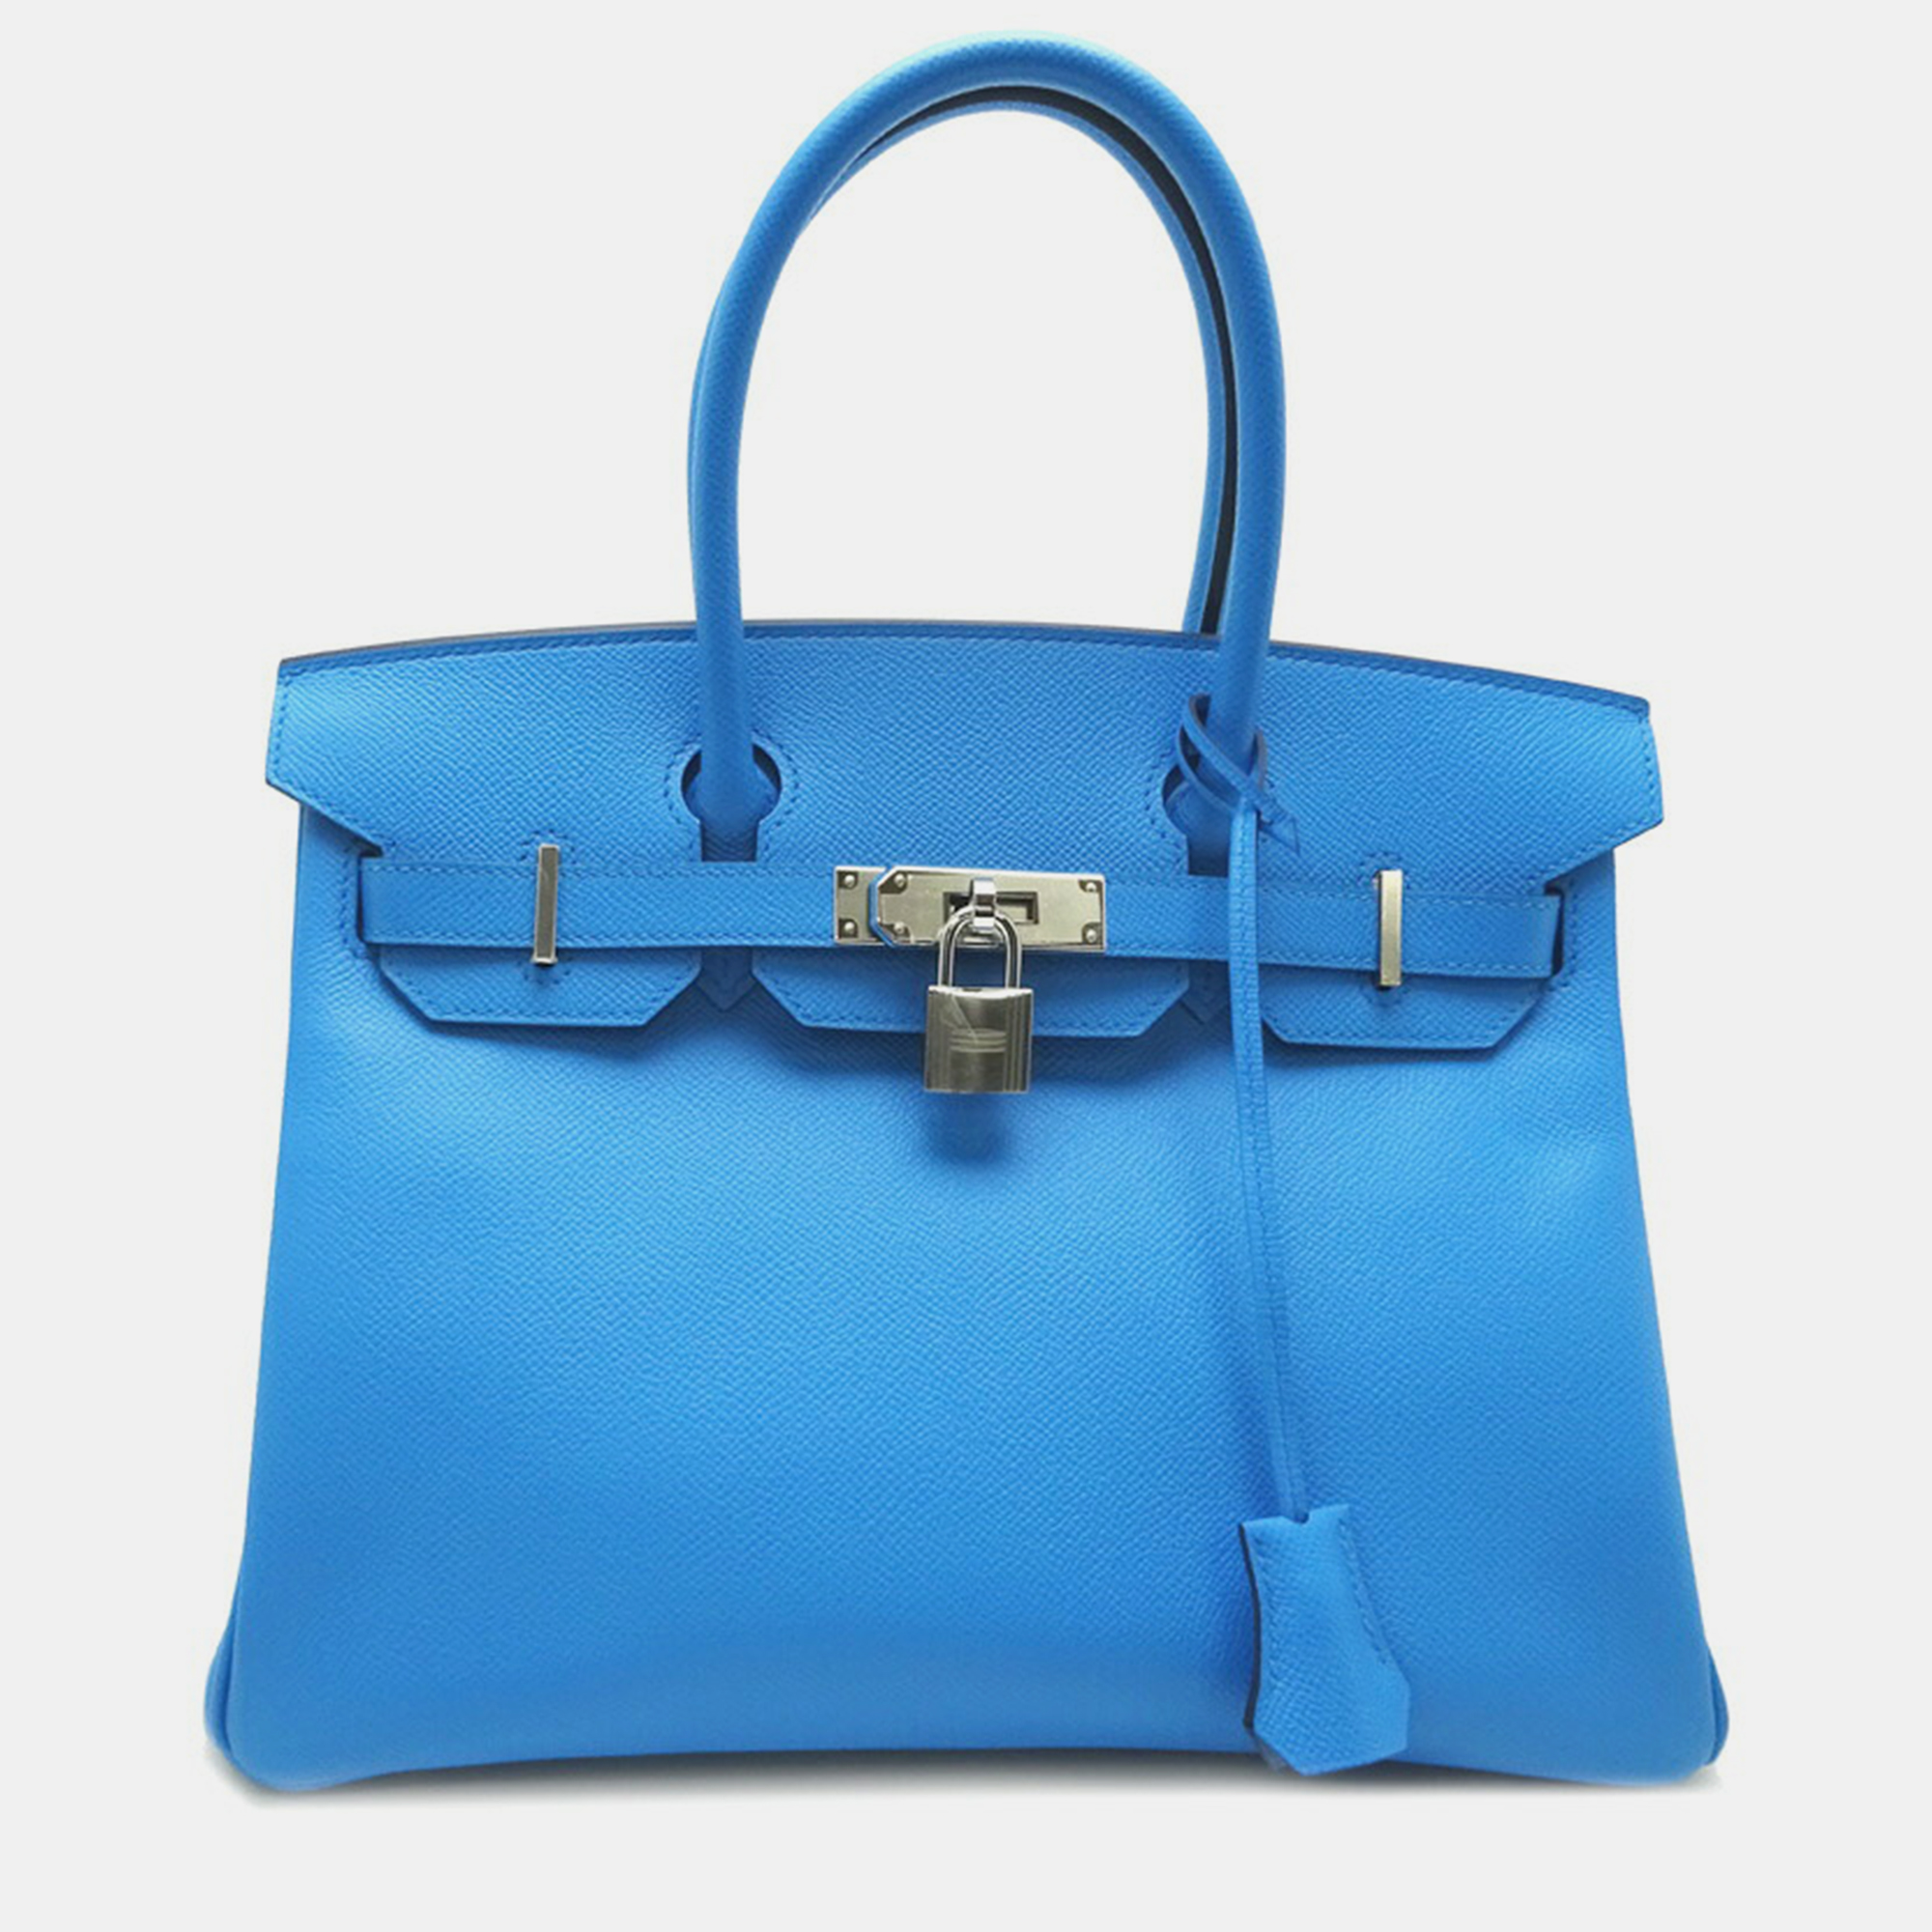 Hermes Blue Epsom Leather Birkin 30 Tote Bag